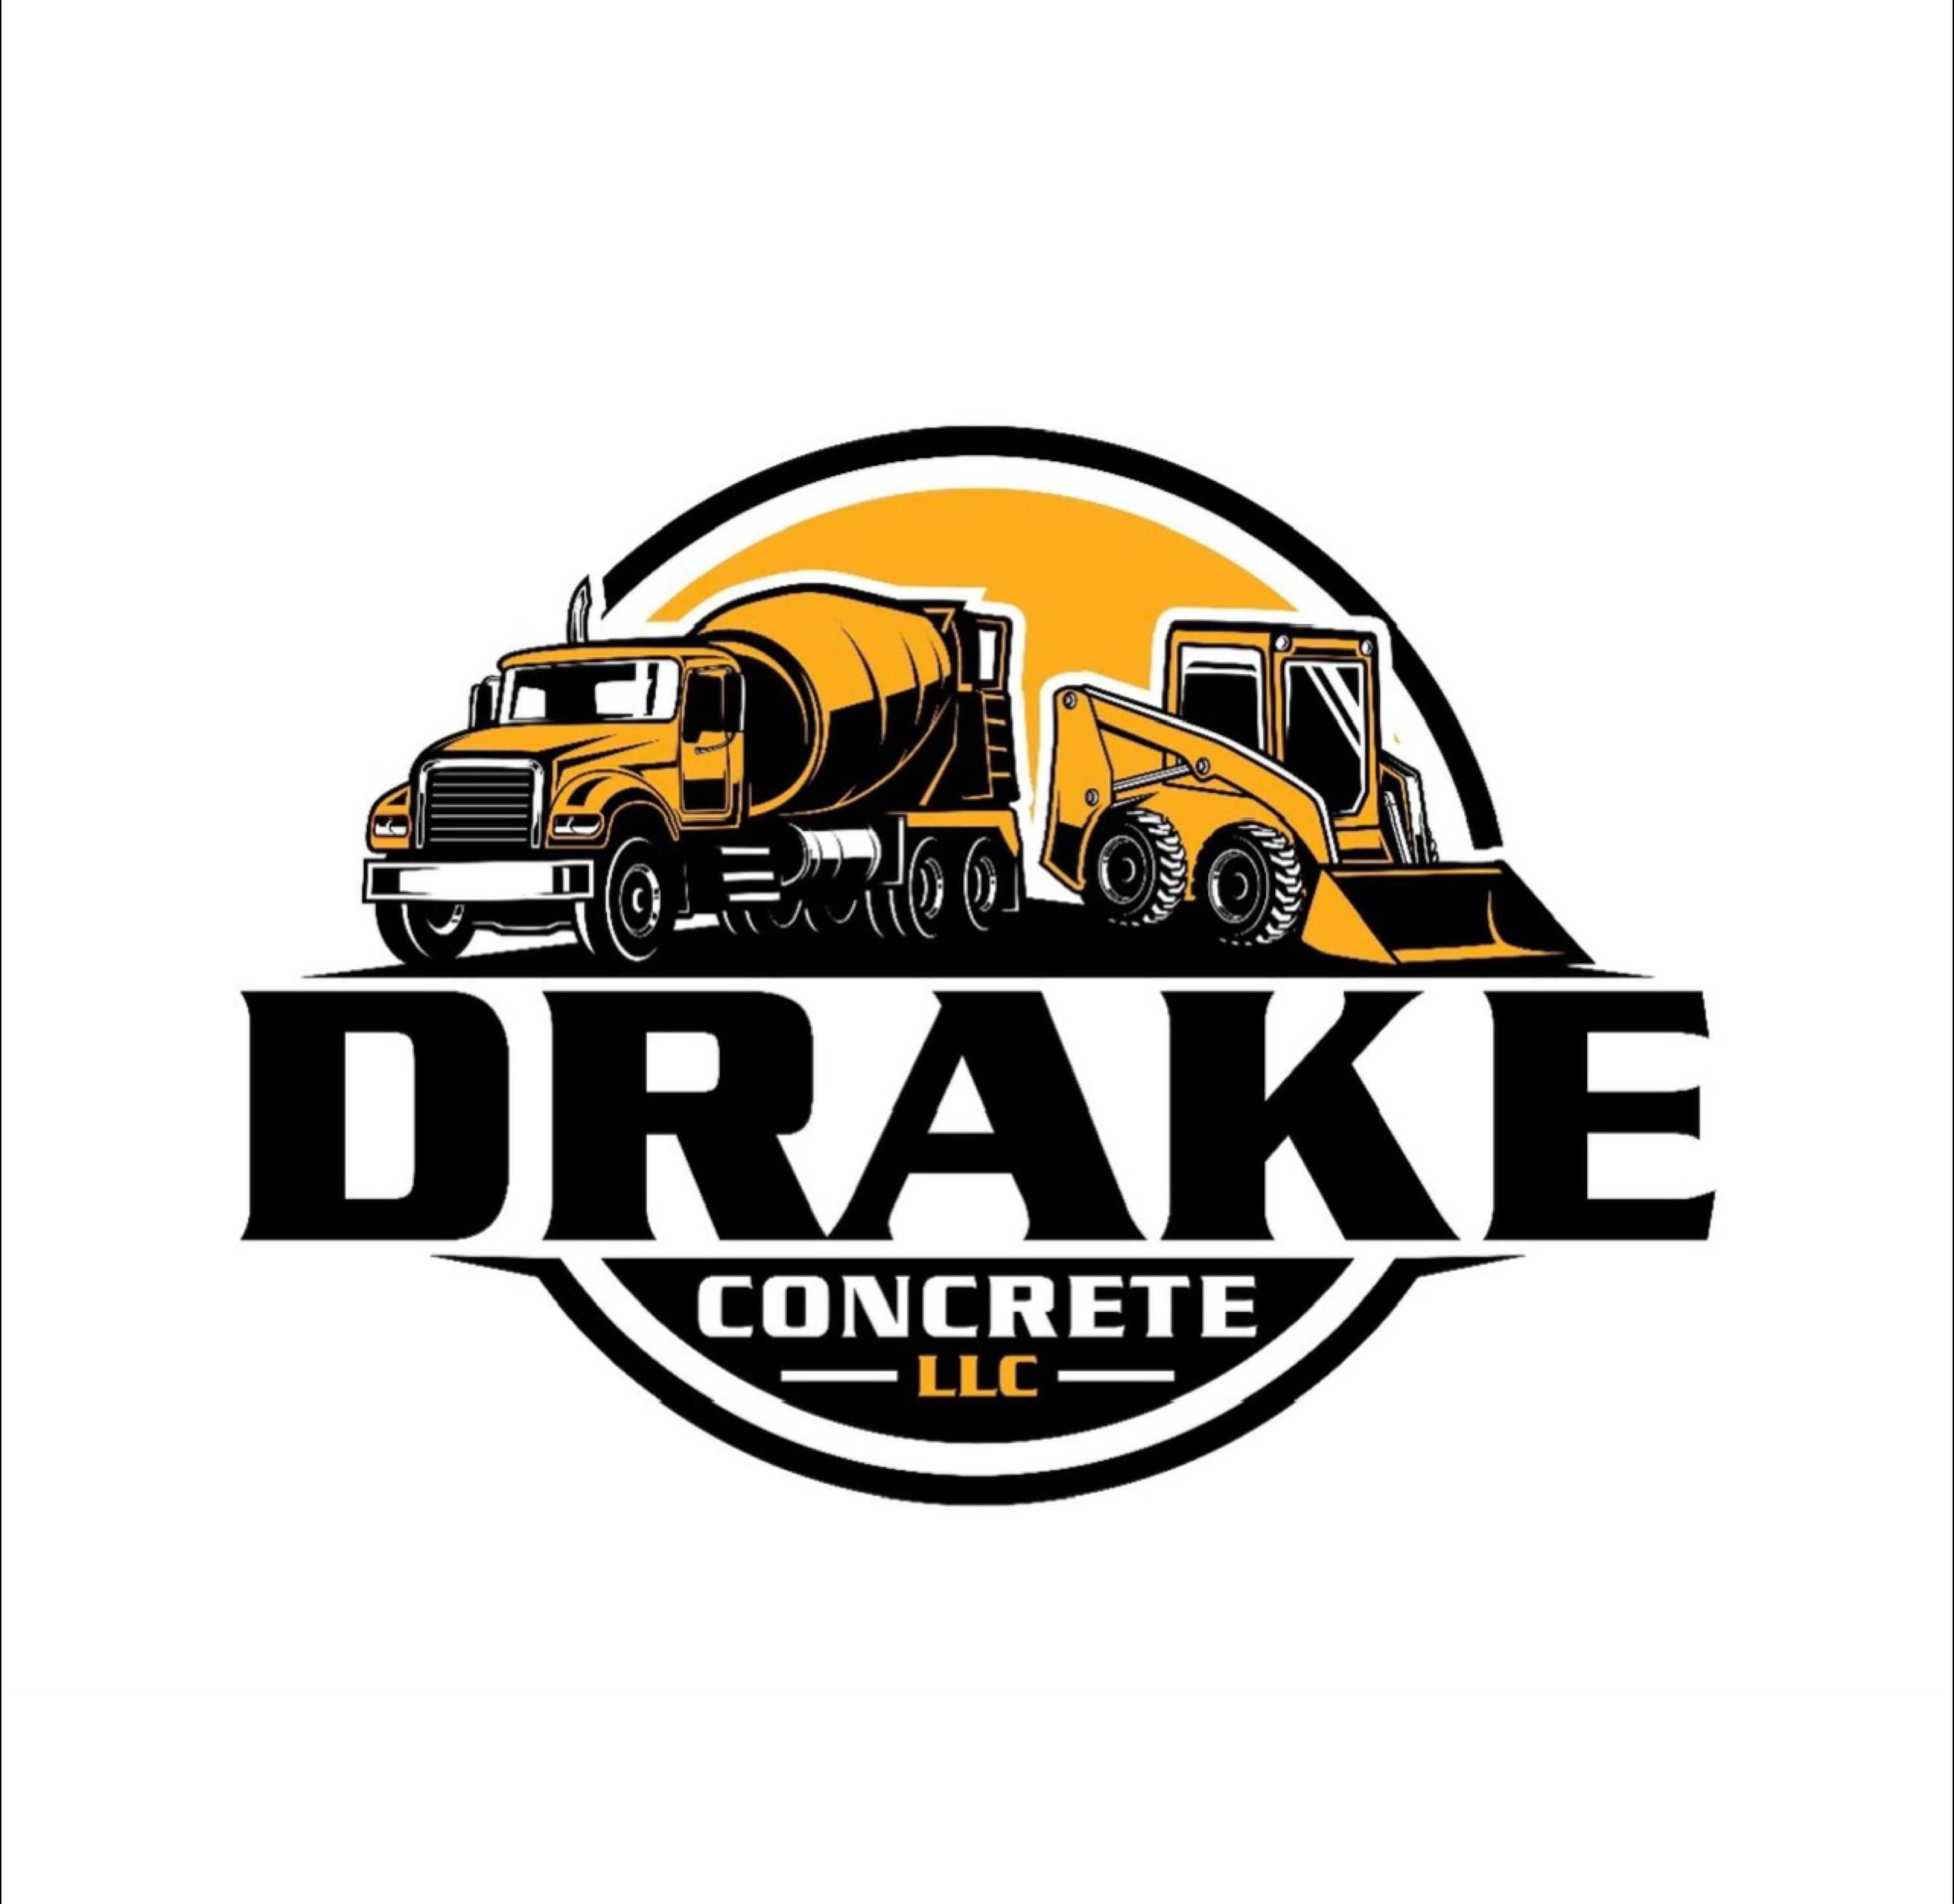 DRAKE CONCRETE LLC Logo